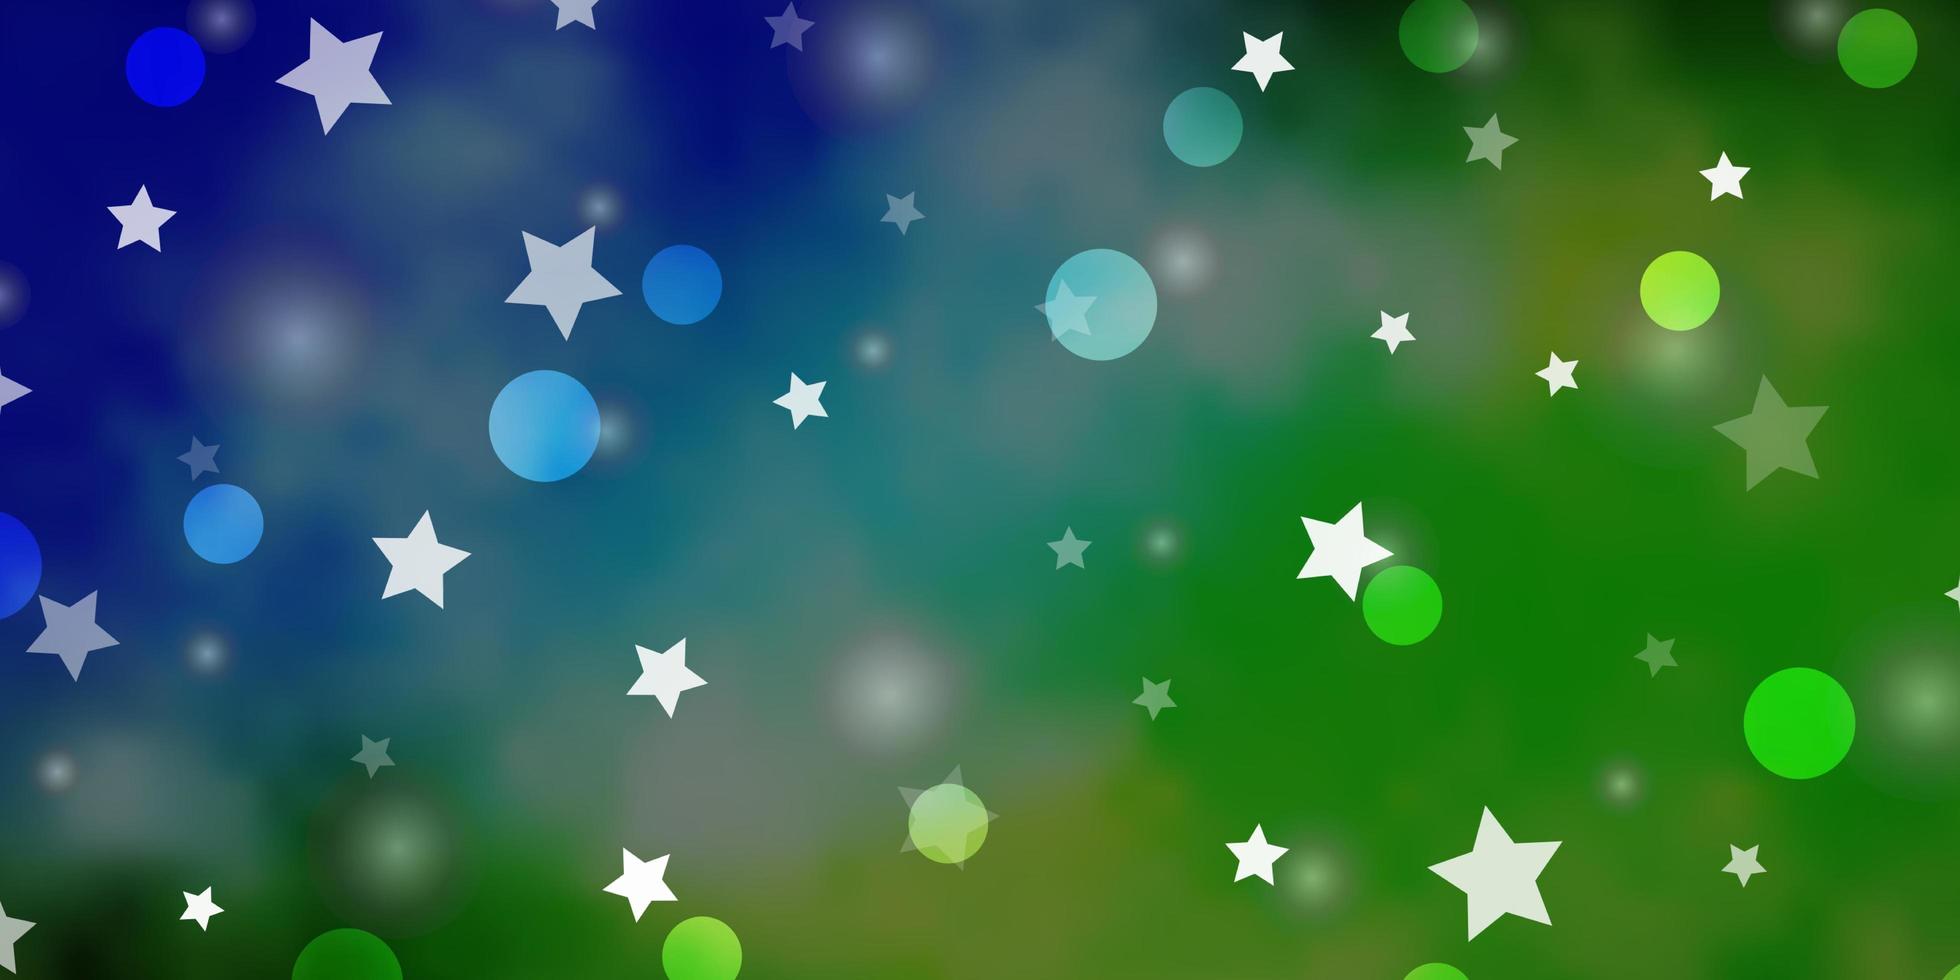 struttura vettoriale azzurro, verde con cerchi, stelle. dischi colorati, stelle su sfondo sfumato semplice. modello per tessuto alla moda, sfondi.